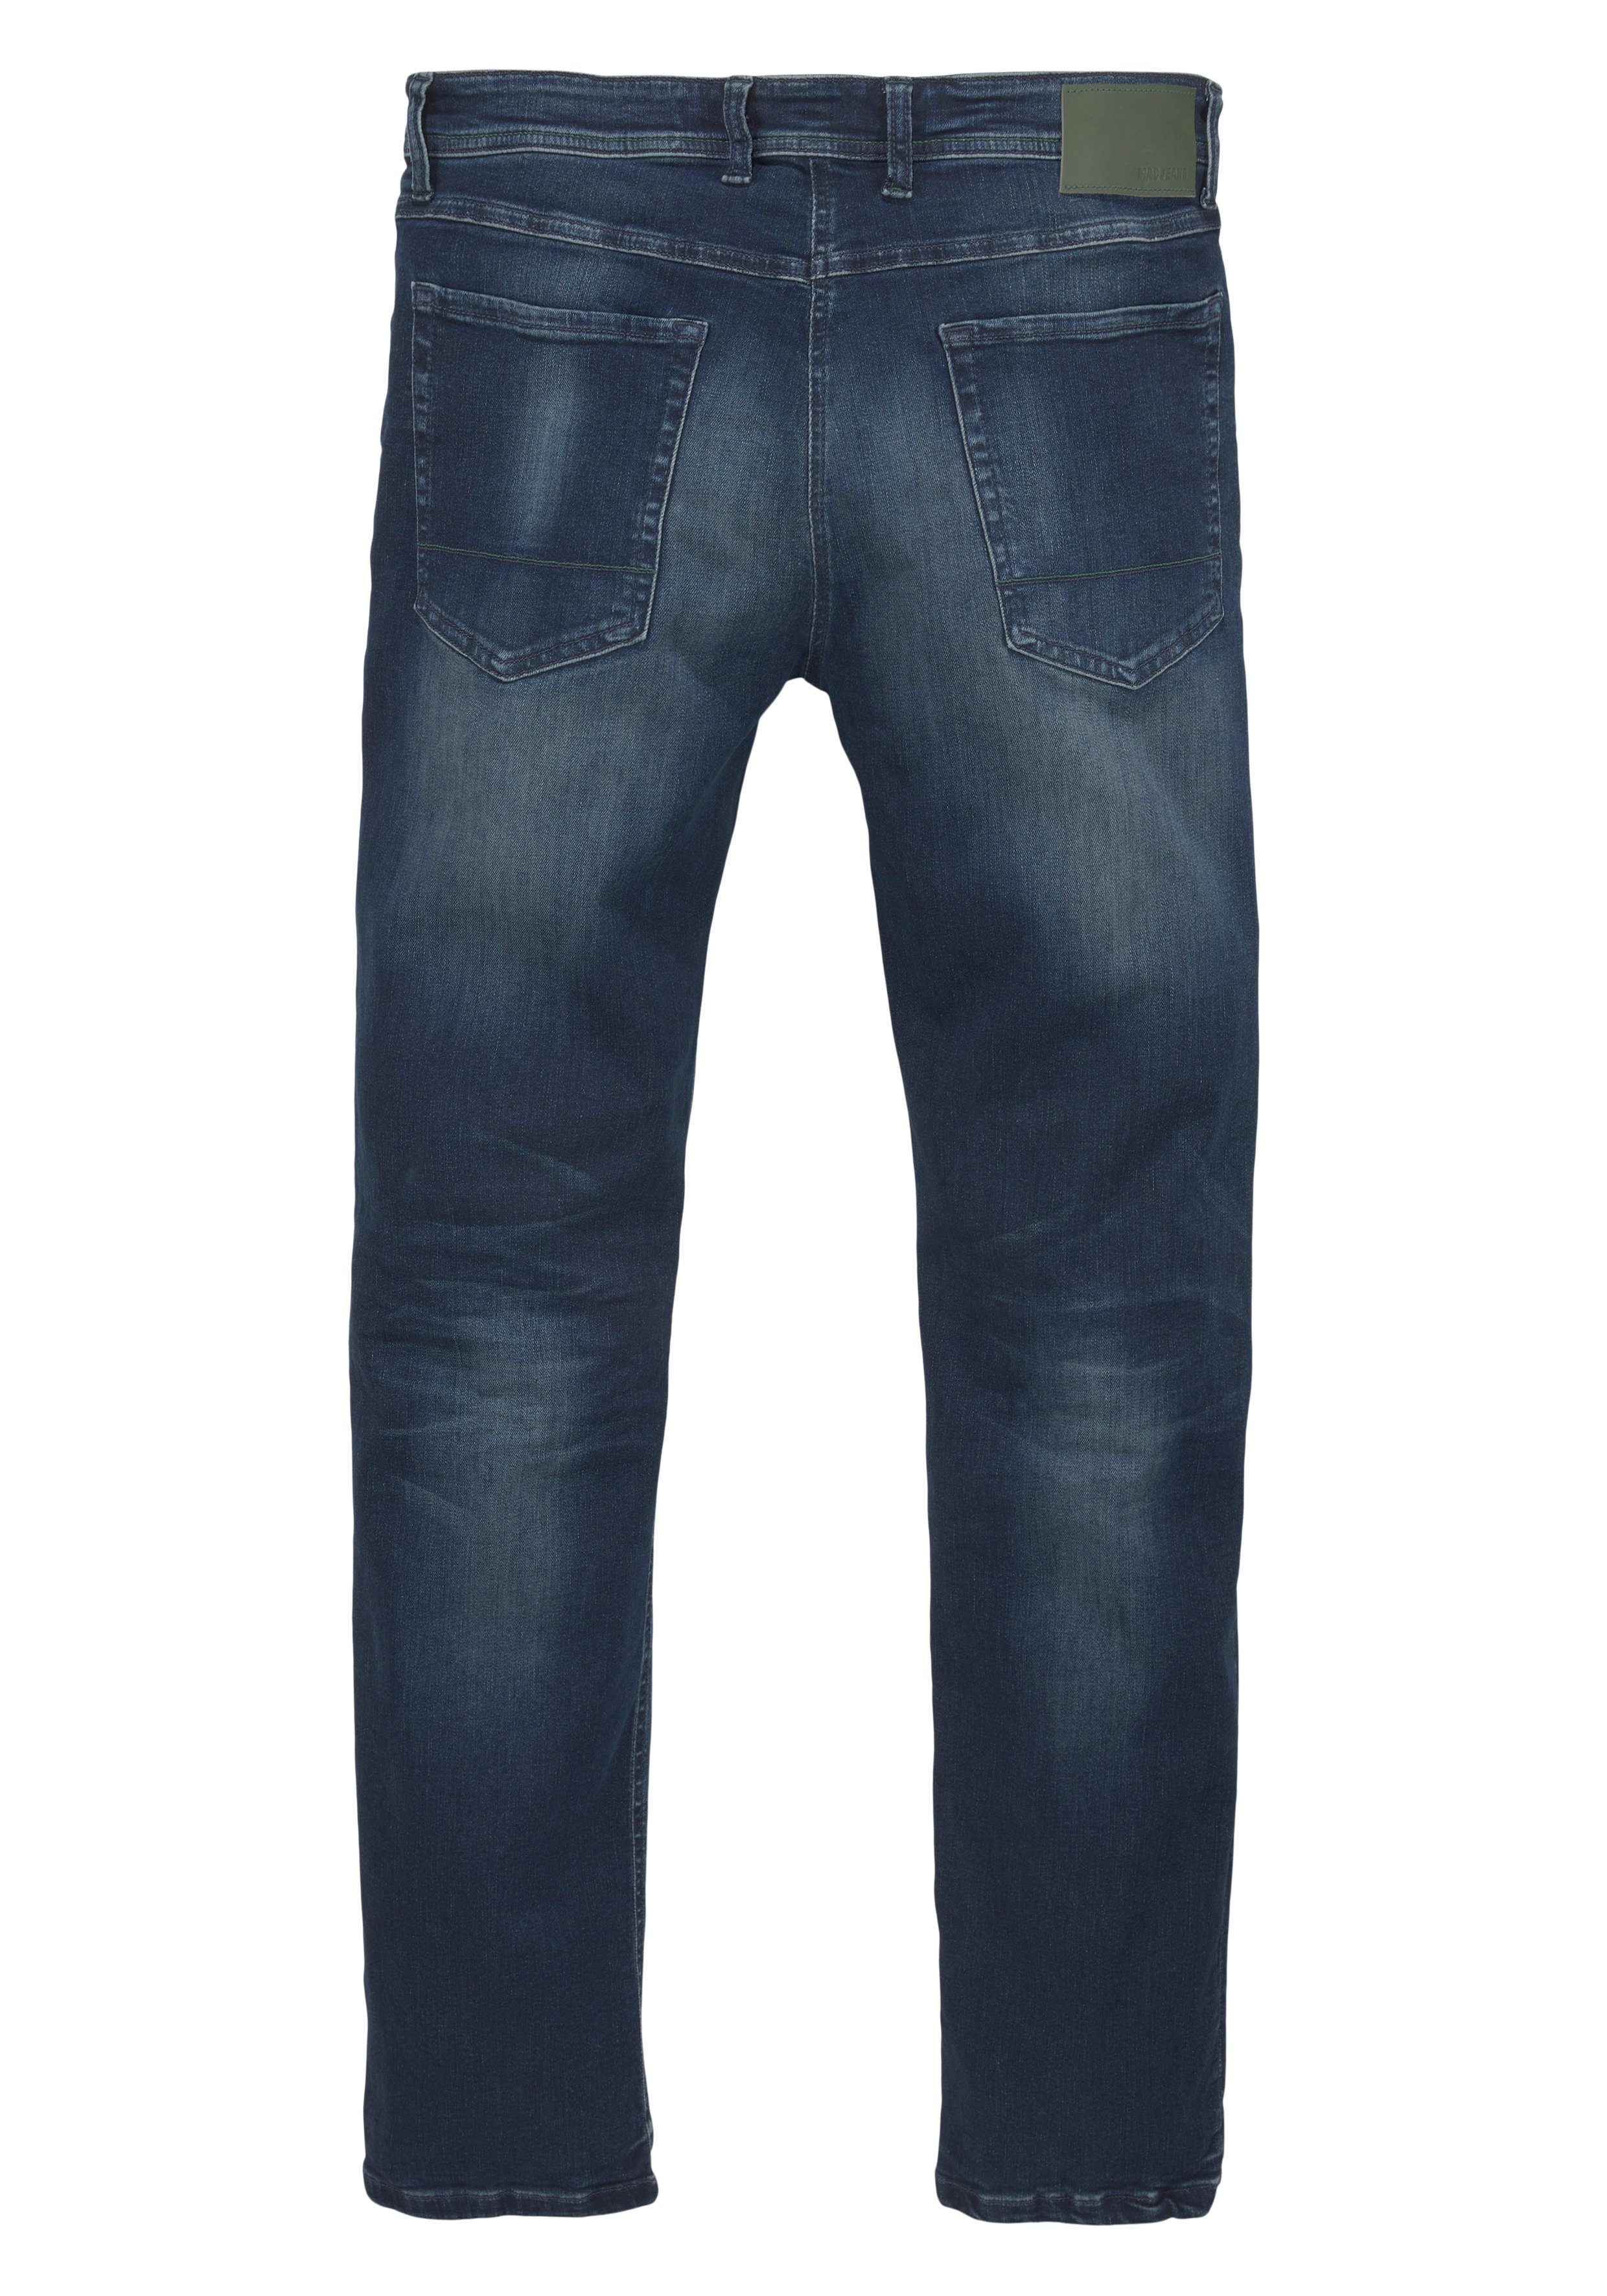 Straight-Jeans dark super blue MAC elastisch Flexx-Driver used authentic